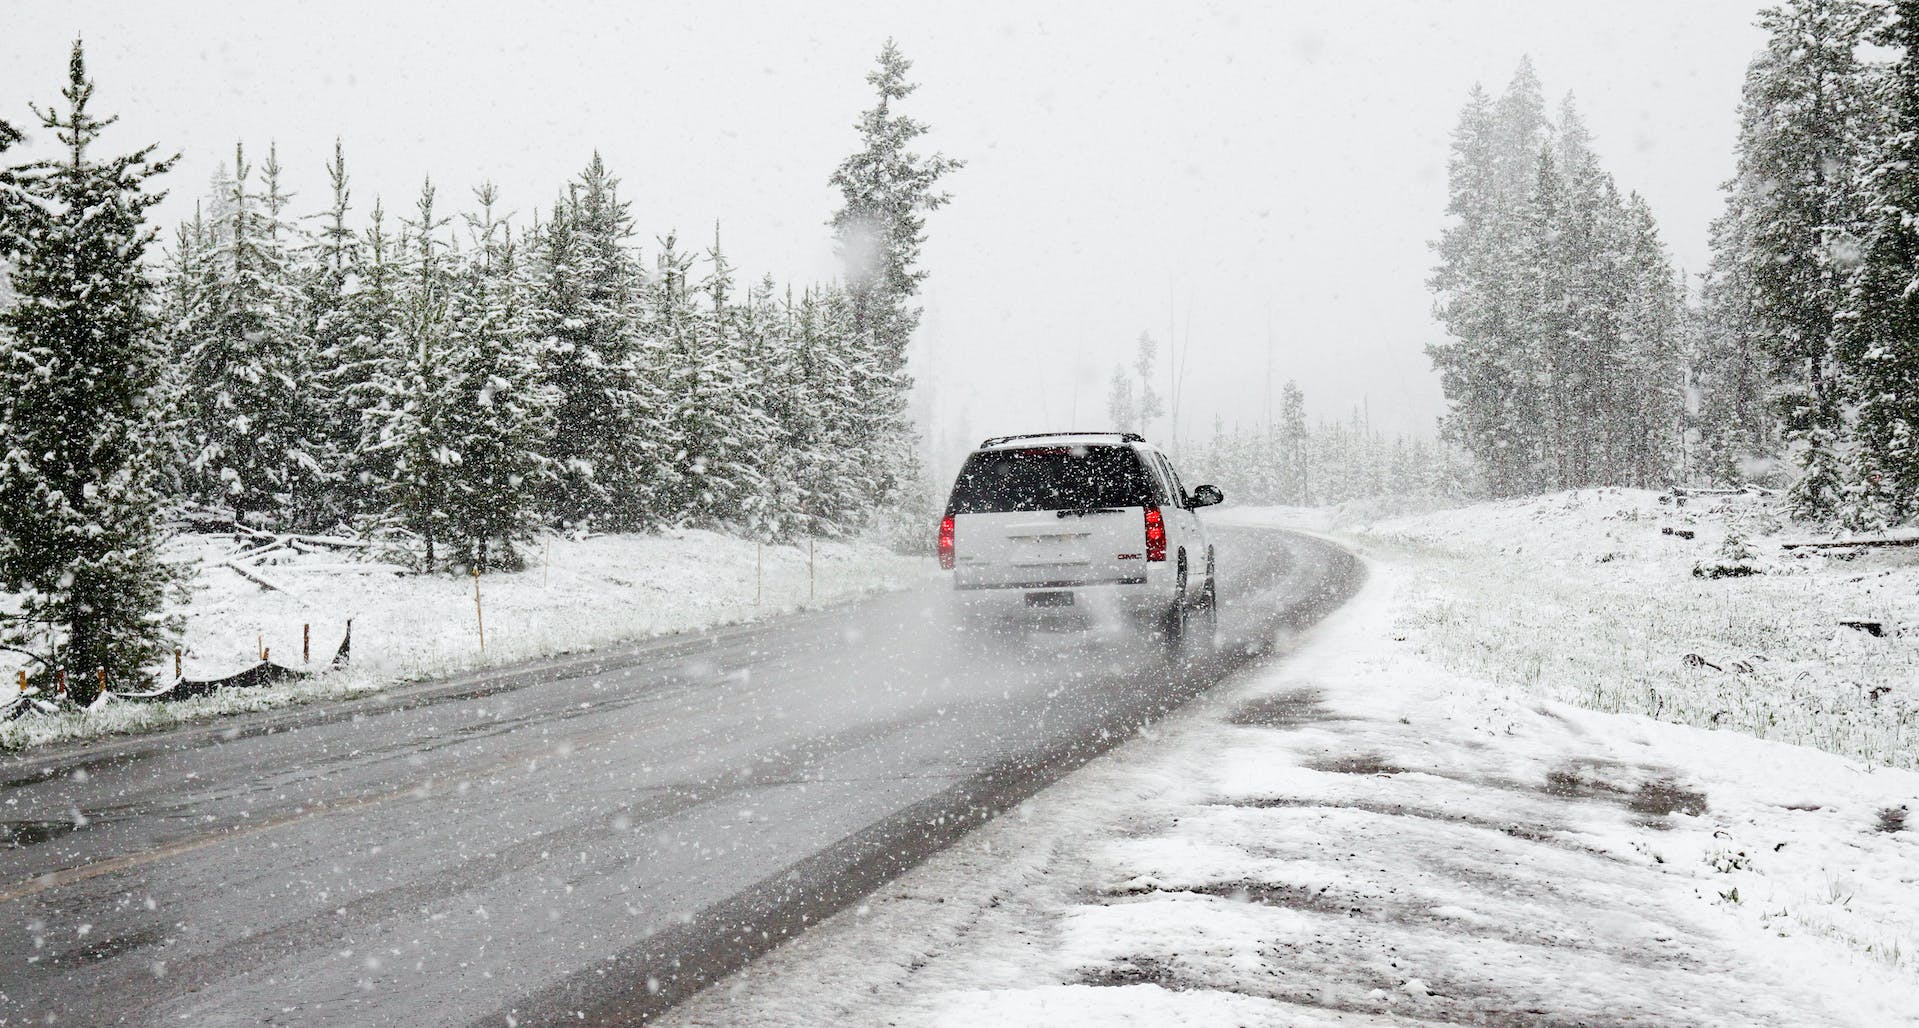 La neige du pare-brise couvre votre véhicule. Housse de pare-brise de  voiture pour voiture, camion et SUV. Le protecteur d'hiver automatique  épais protège de la glace, du gel et de la neige.